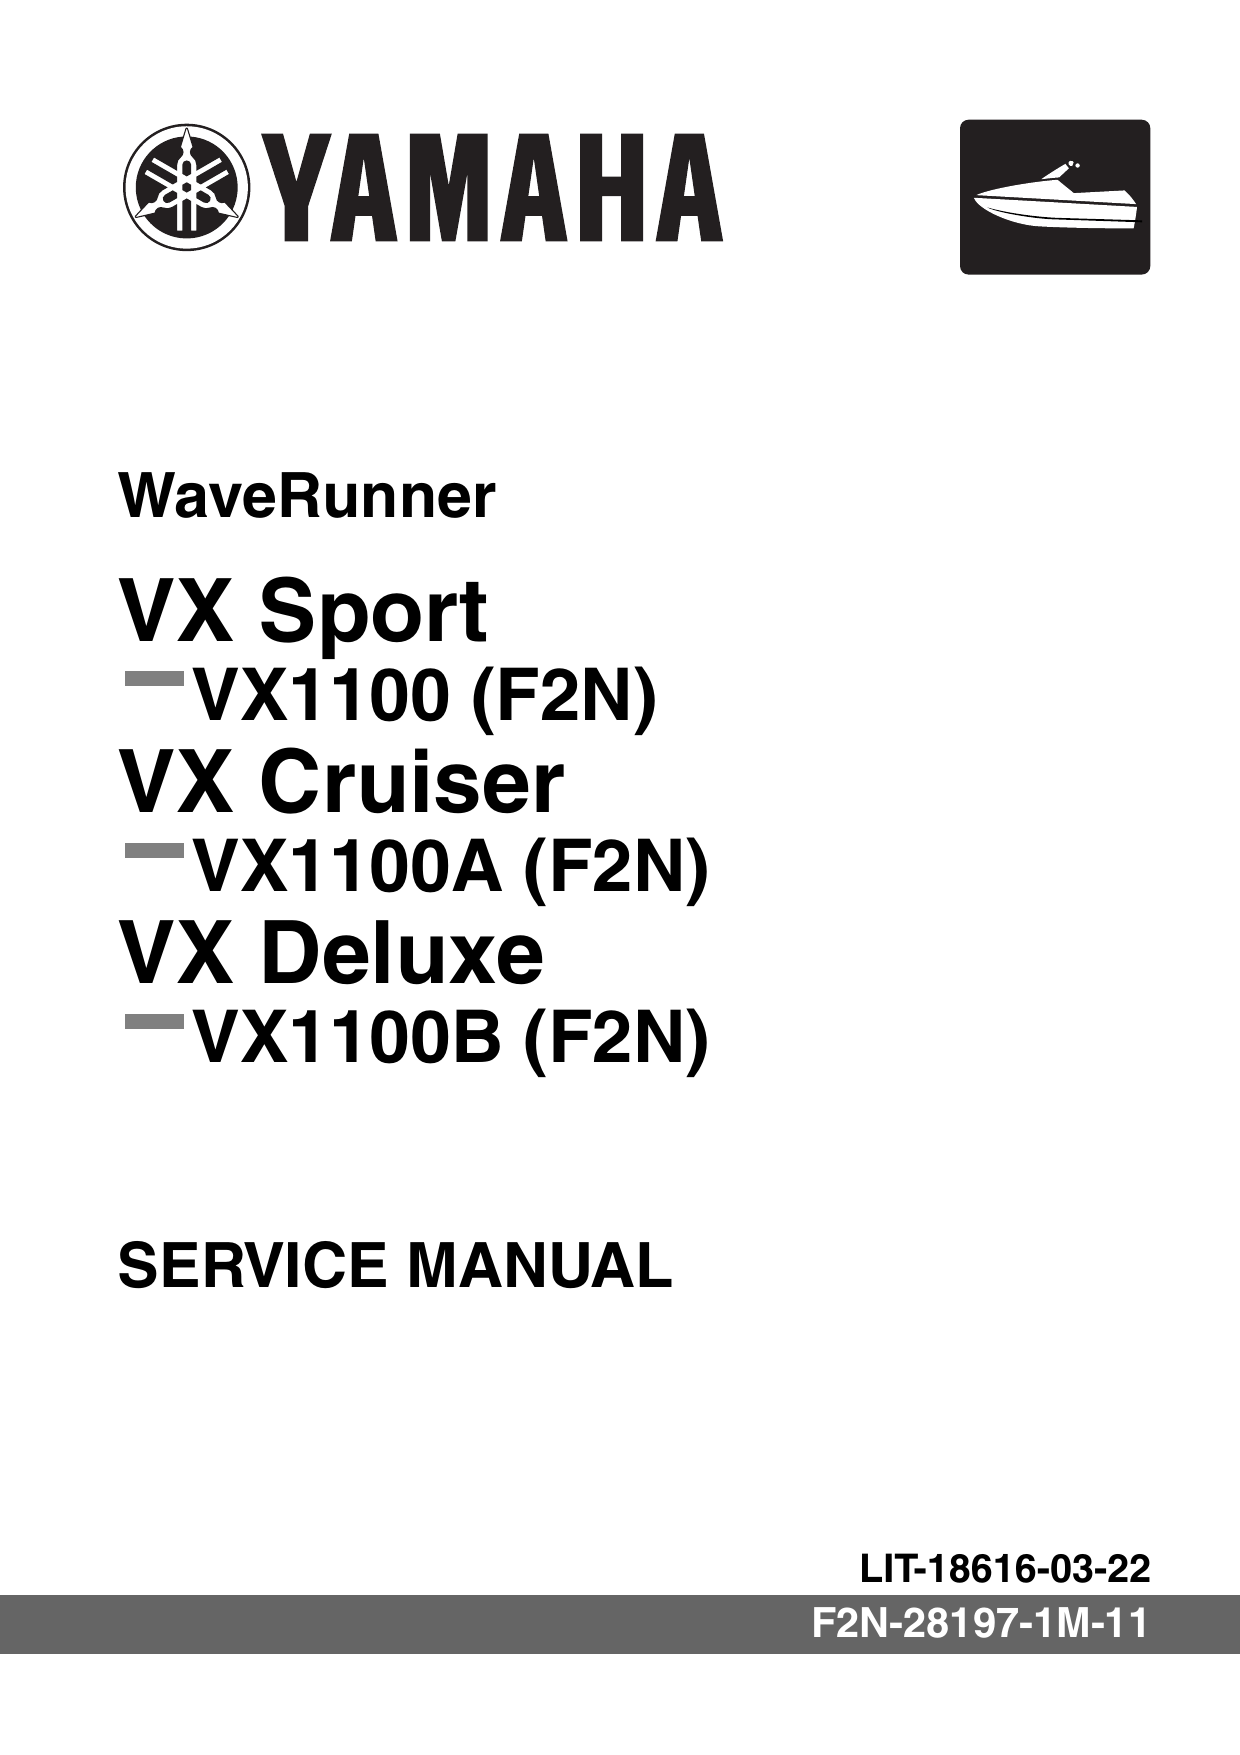 2010-2012 Yamaha VX1100 WaveRunner, VX Cruiser repair manual Preview image 6